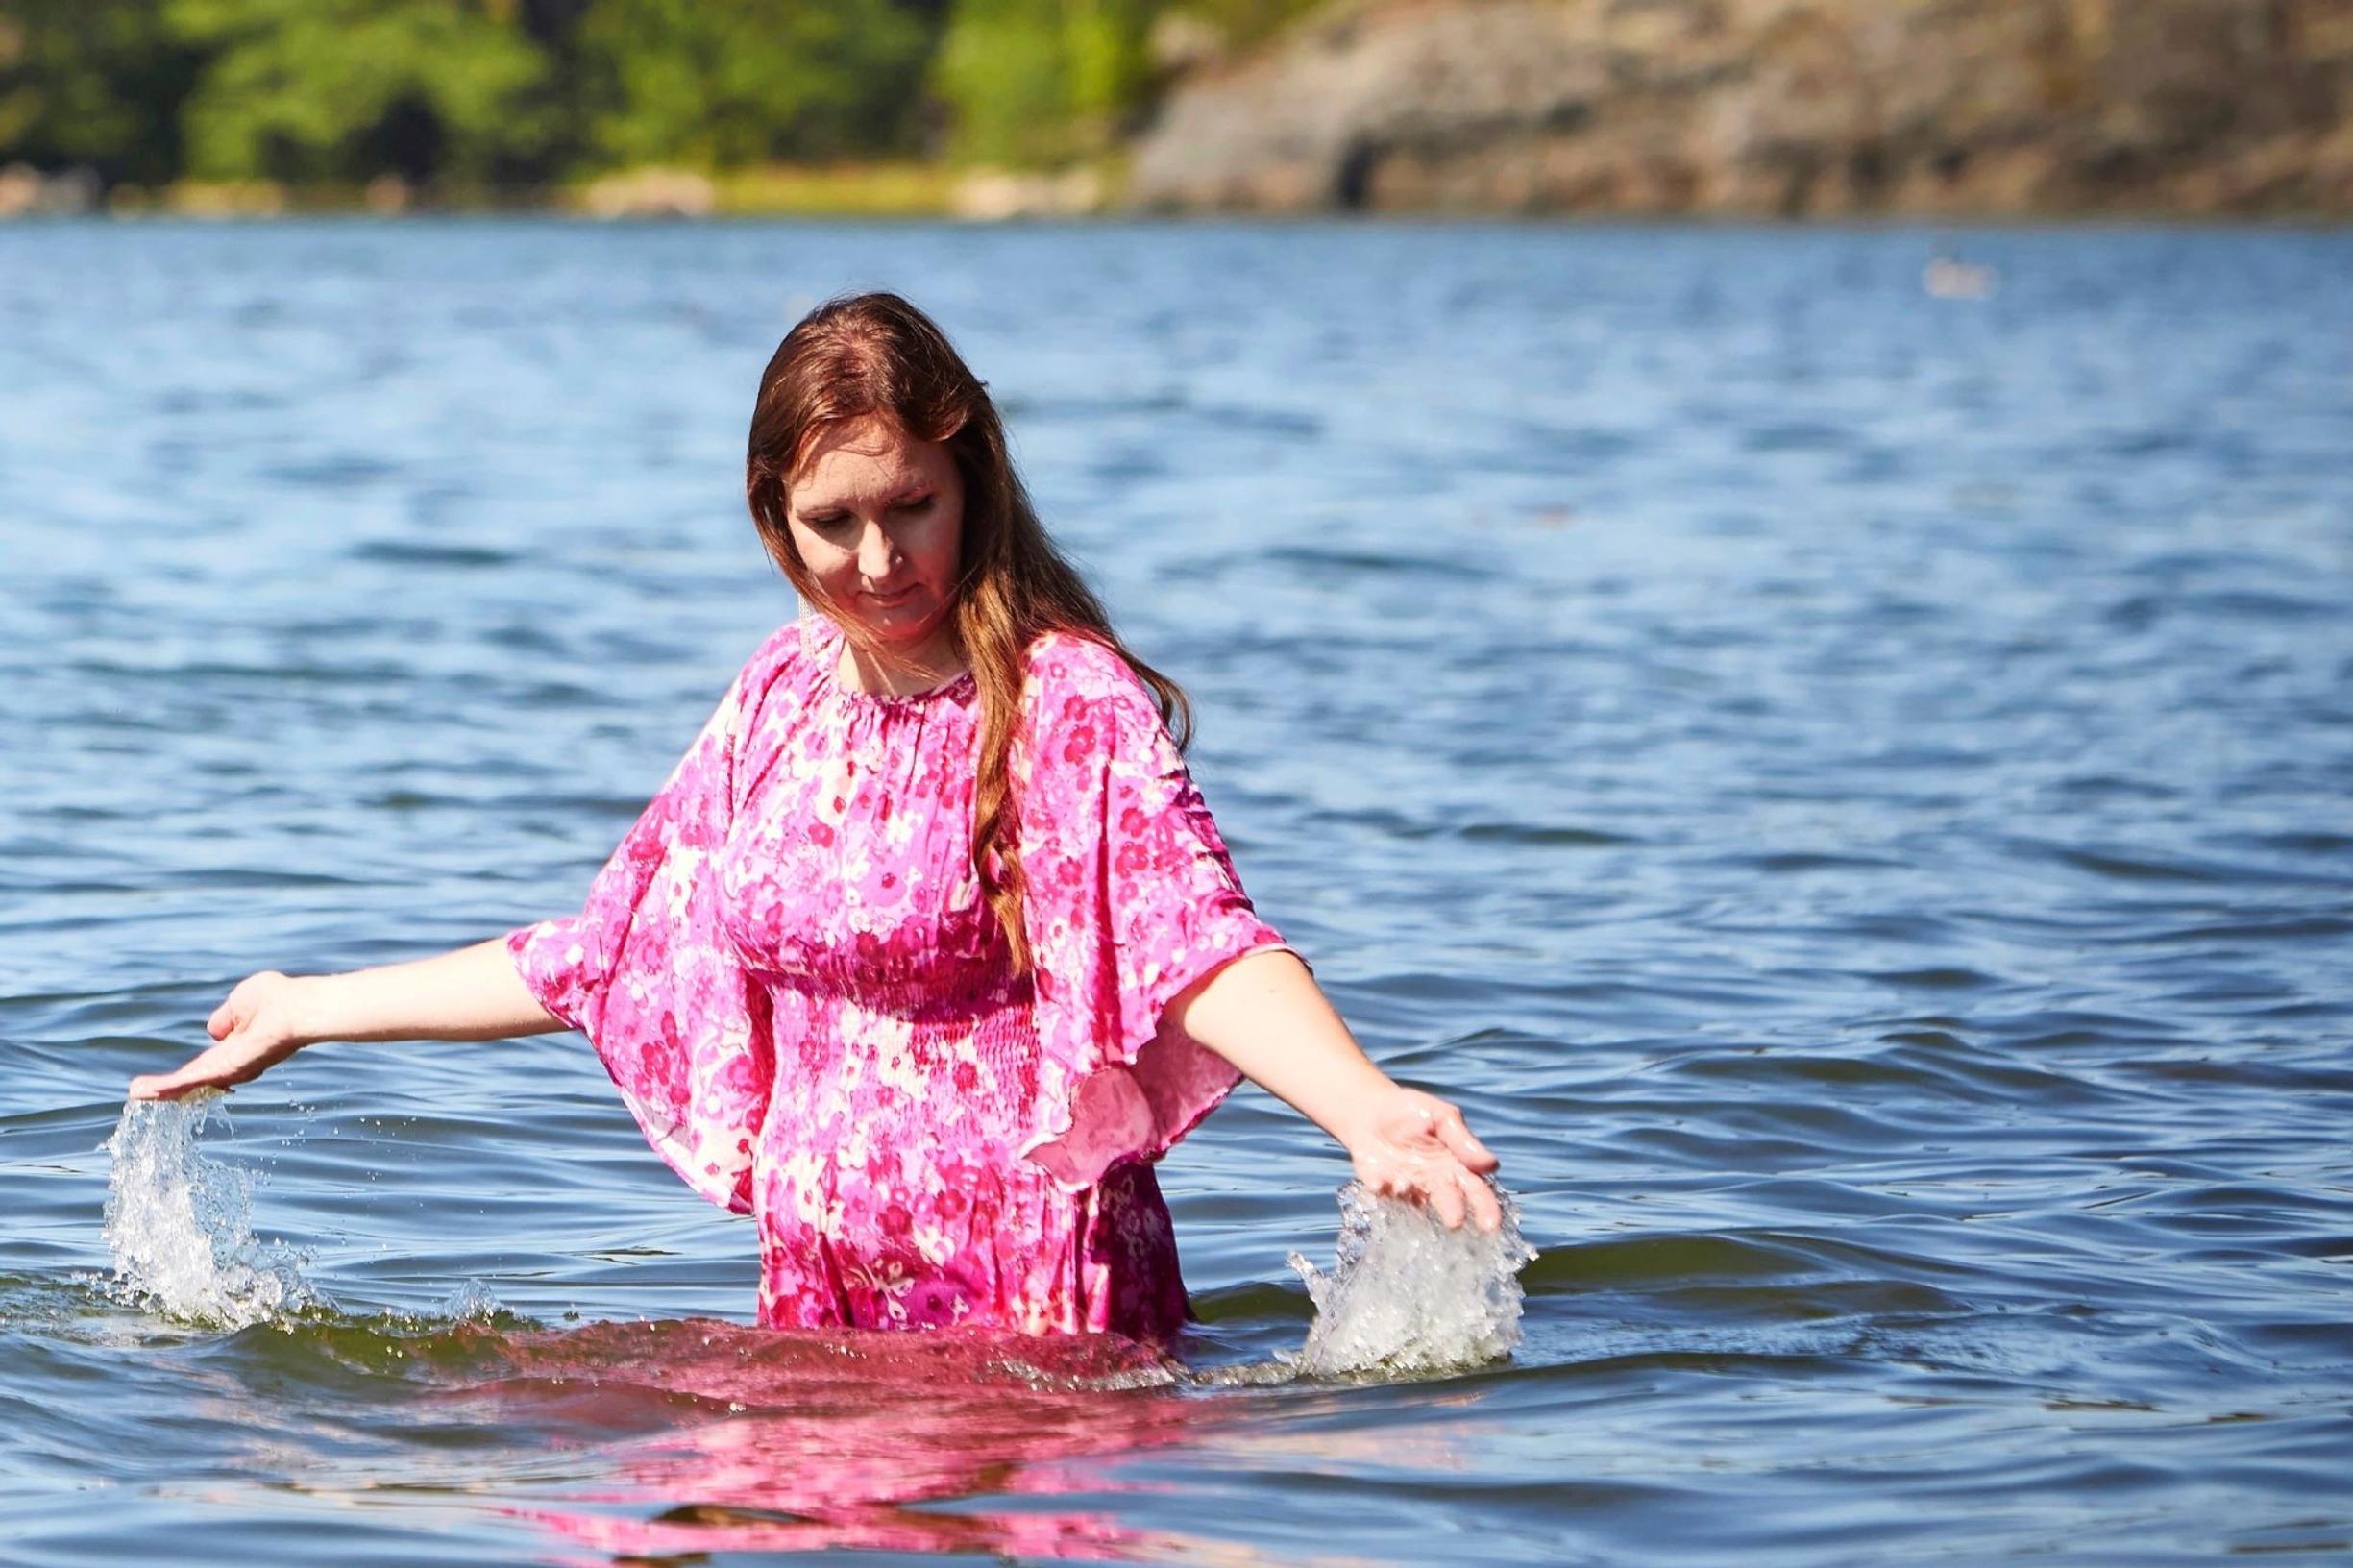 Fyysikko Johanna Blomqvist uskoo veden parantavaan voimaan: ”Veden äärellä en ole koskaan yksin”